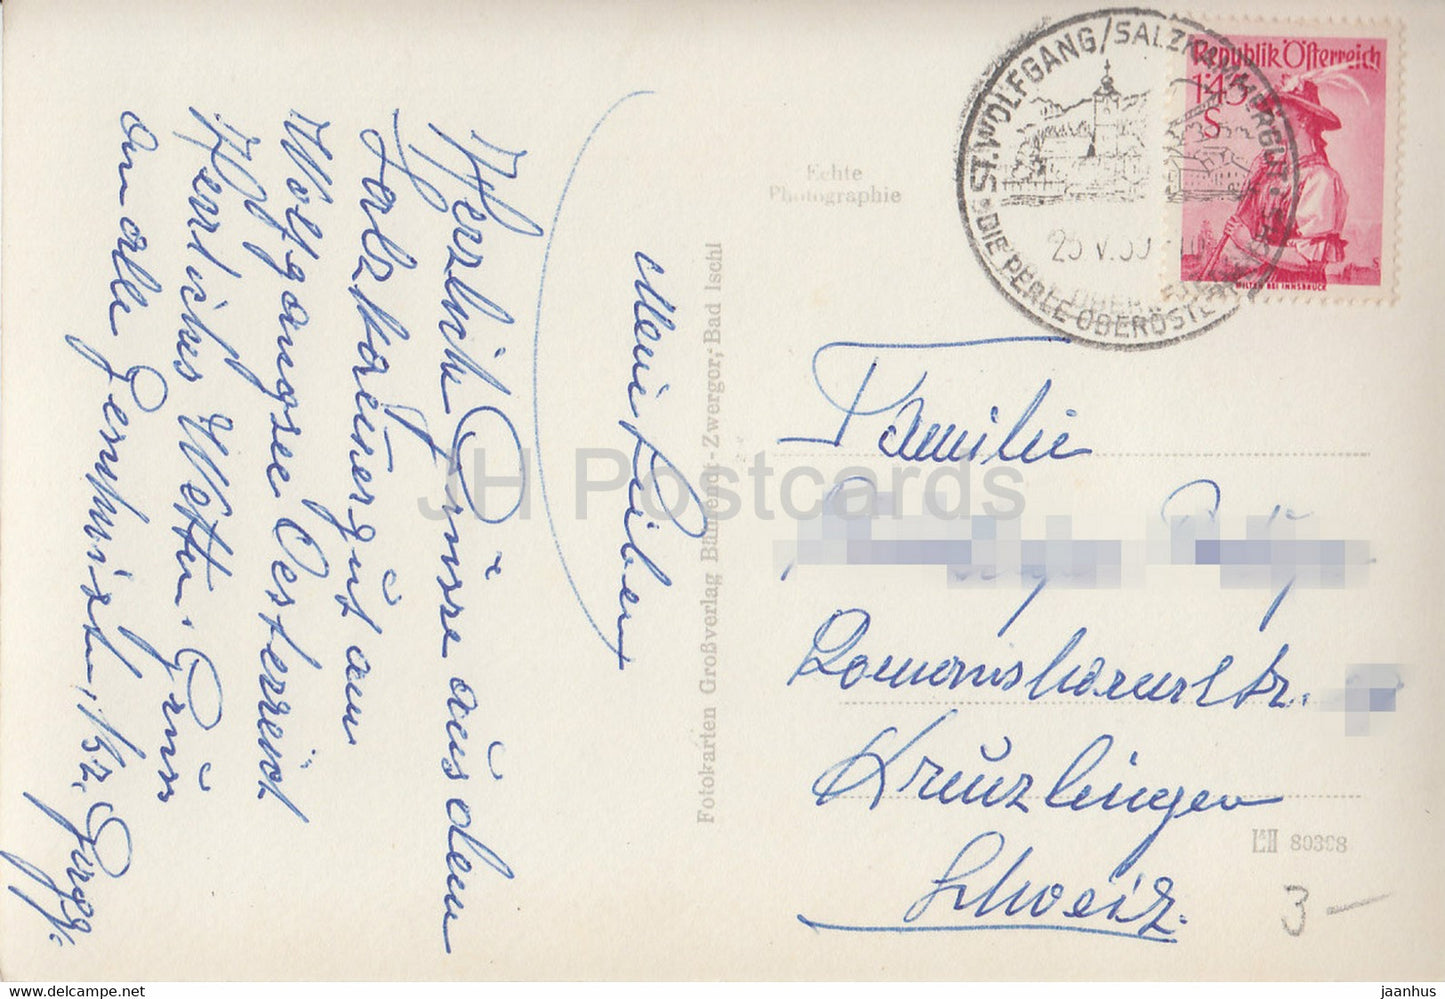 St Wolfgang - 4030 - carte postale ancienne - Autriche - utilisé